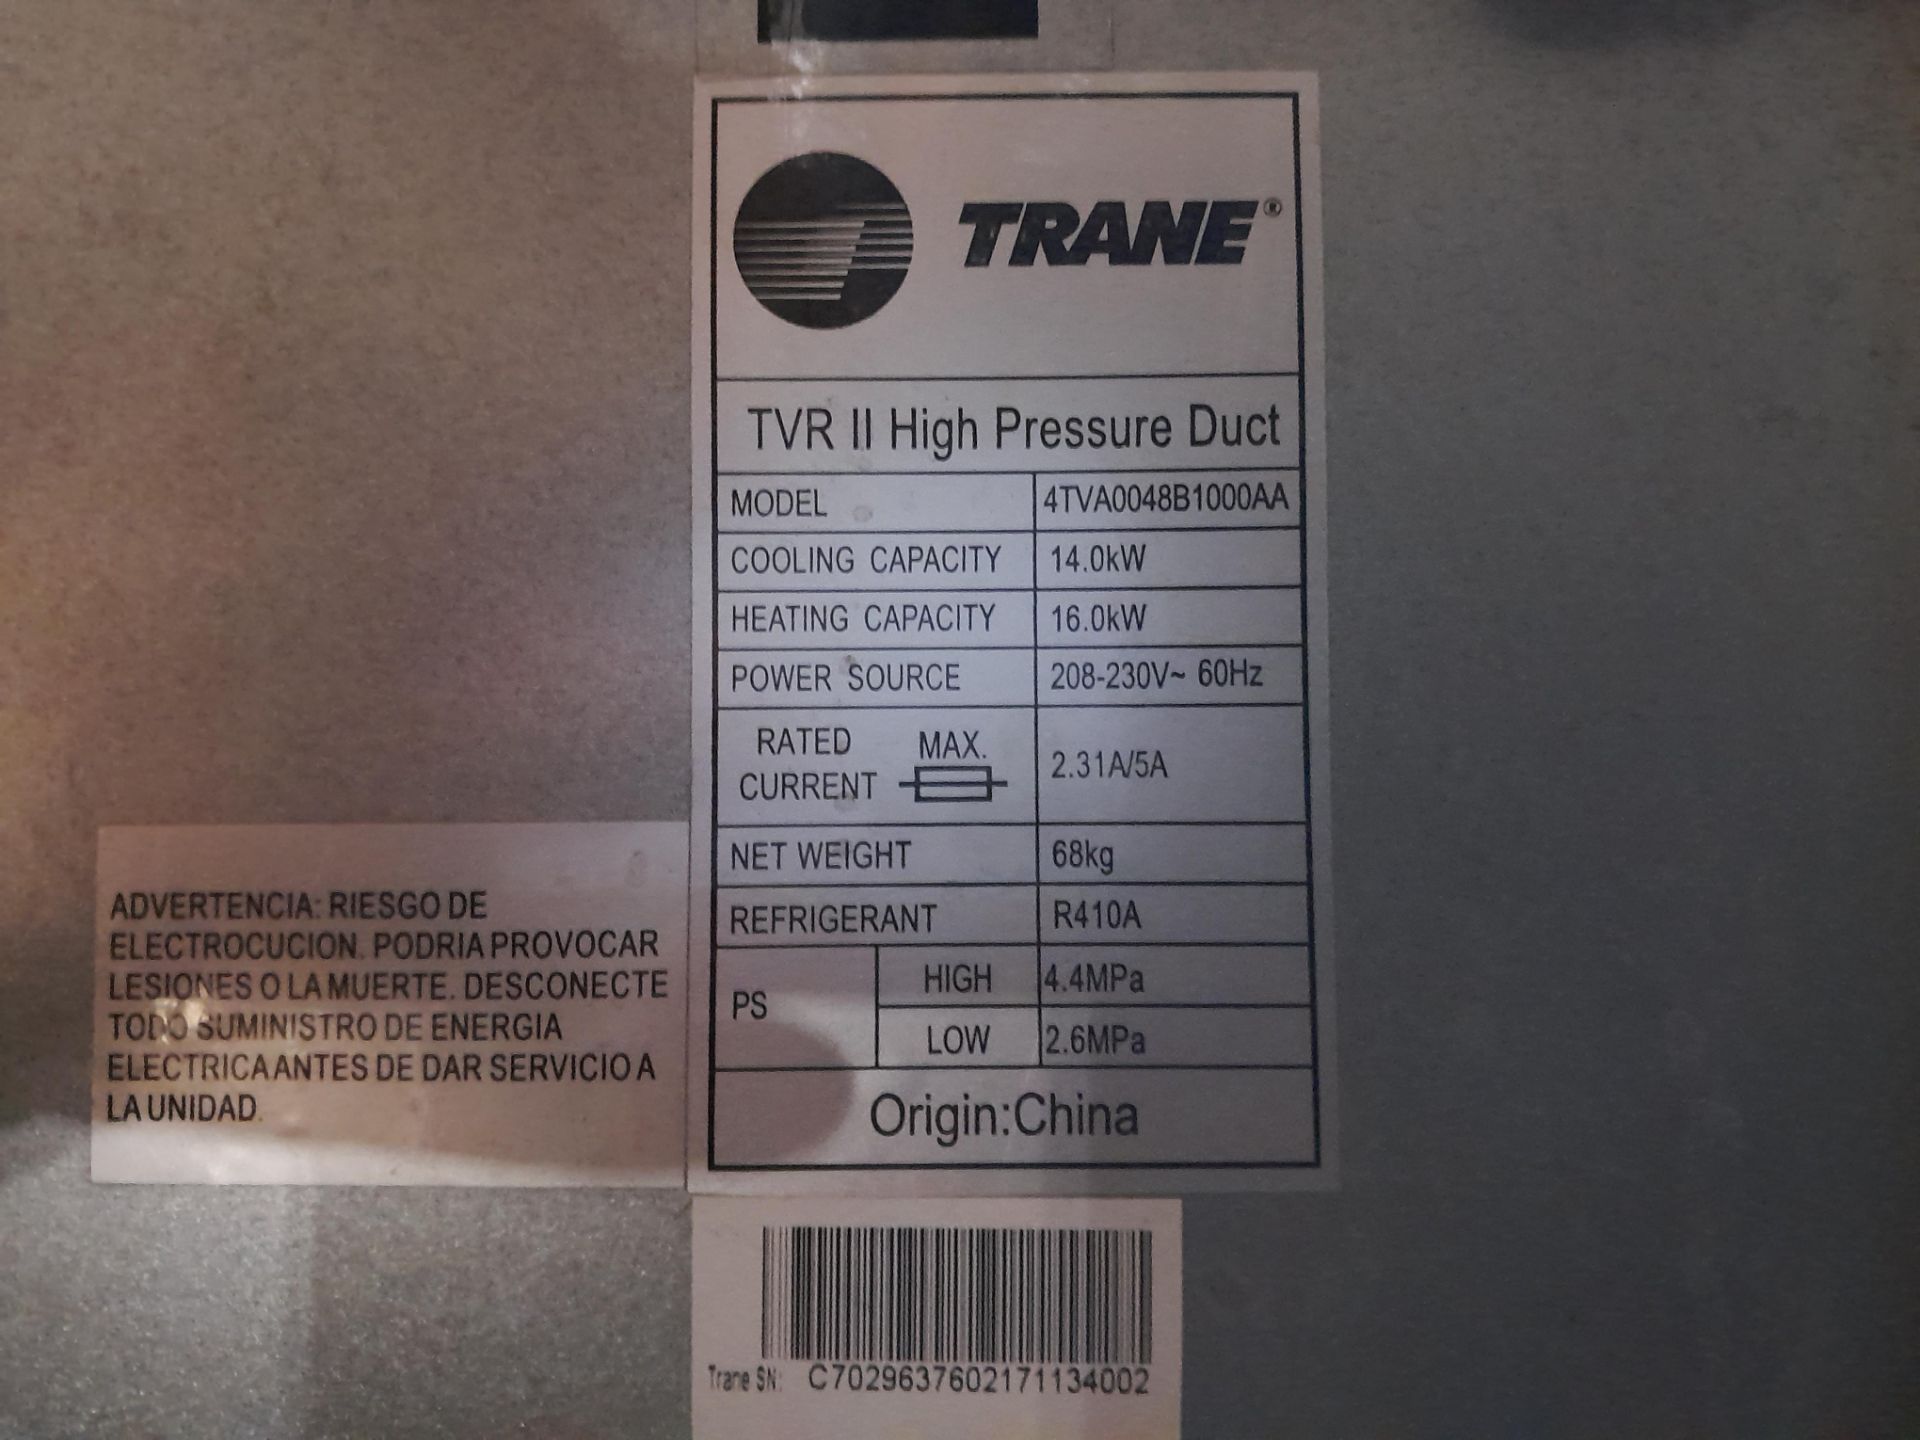 Lote de 2 condensadores, Modelo 4TVA0048B1000AA; 2 aires acondicionados, Marca TRANE, Modelo 4VTC00 - Image 5 of 6